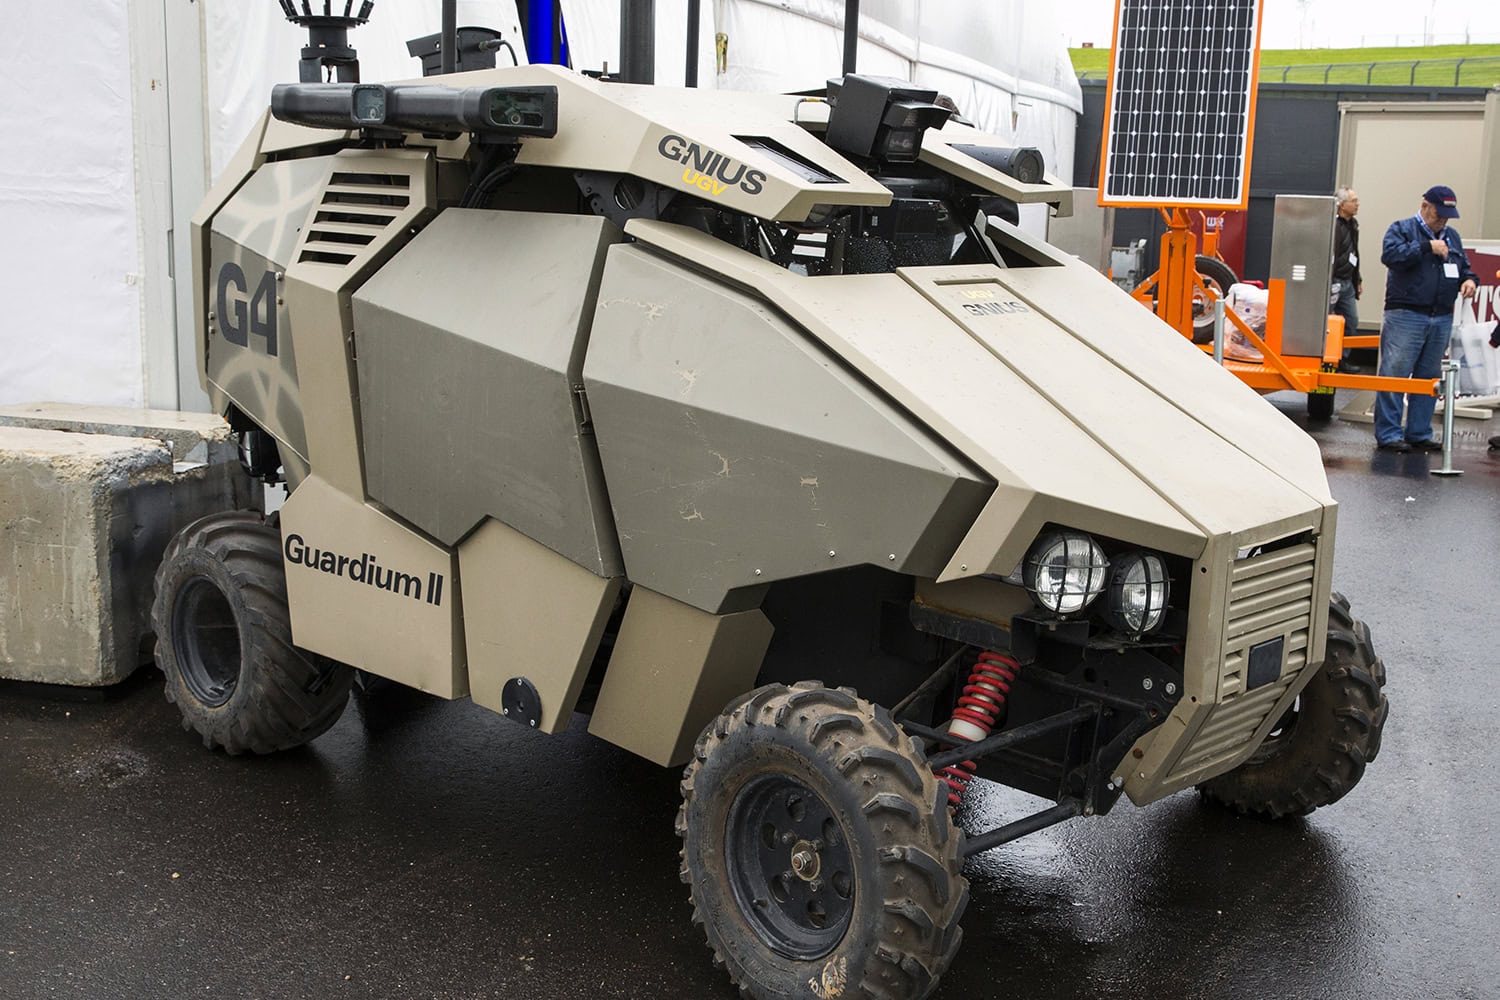 El Guardium II es un vehículo terrestre no tripulado